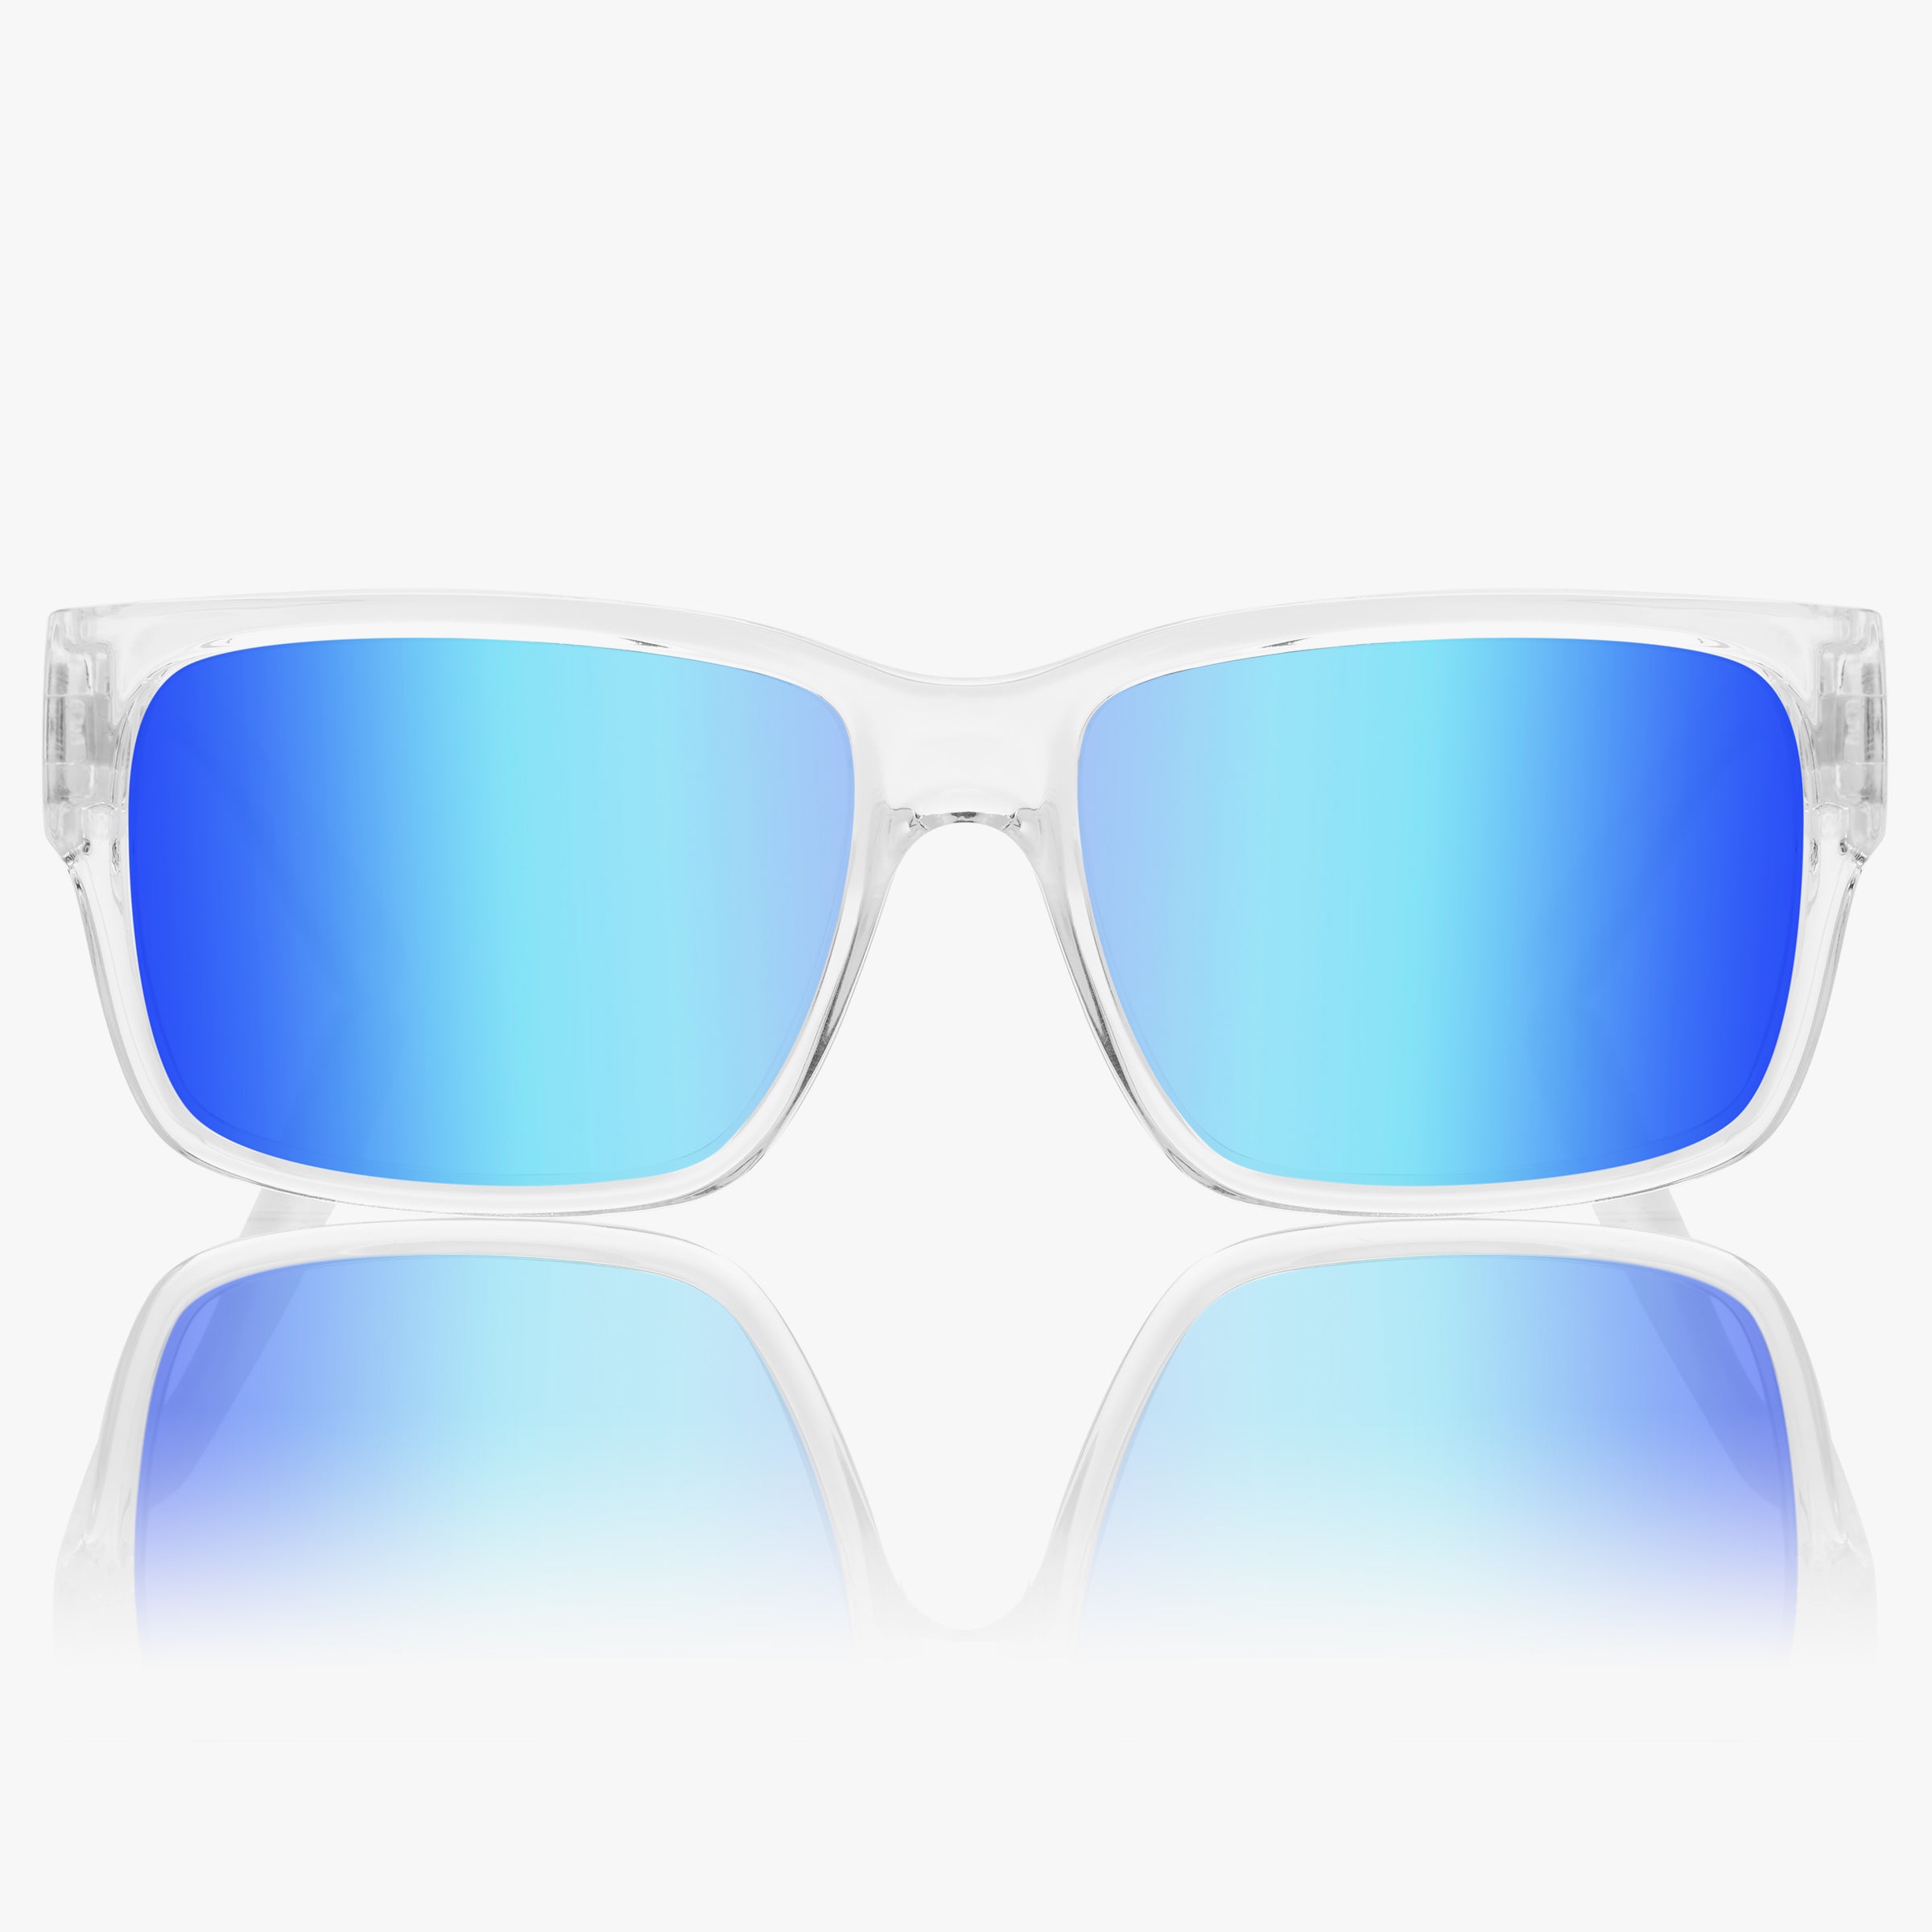 Classico Clear Blue Mirror Polarized Sunglasses for Men